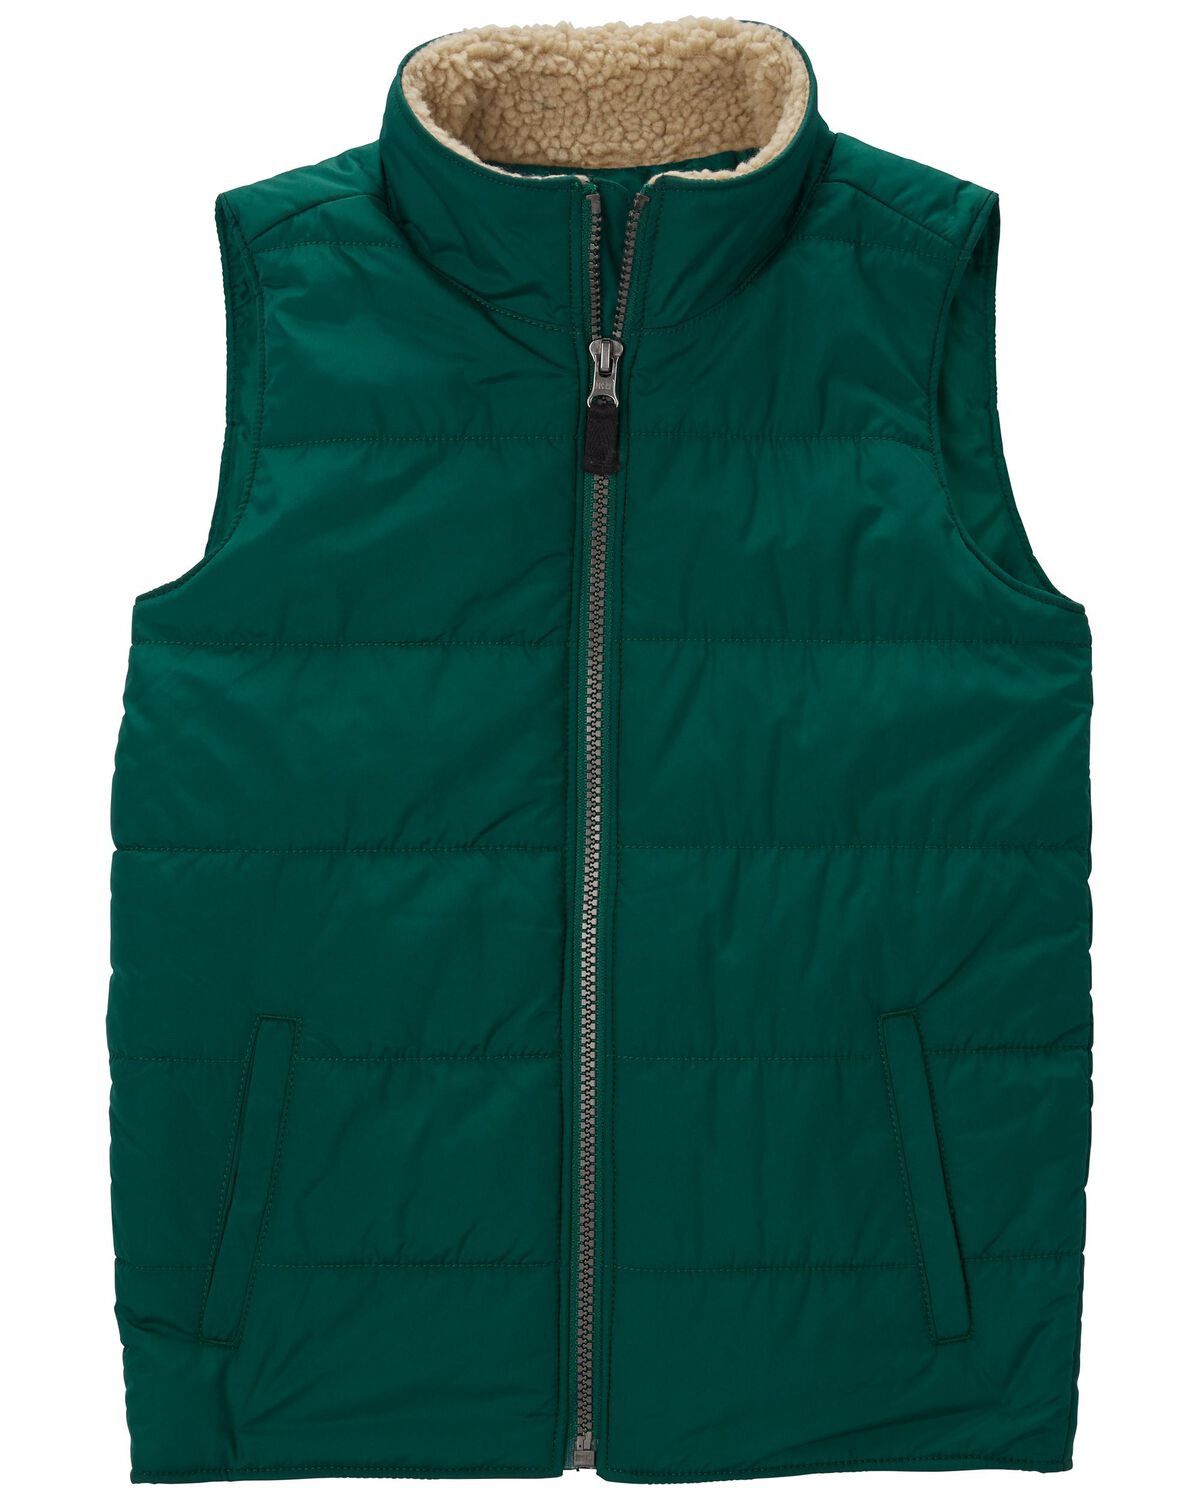 Green Kid Zip-Up Puffer Vest | carters.com | Carter's